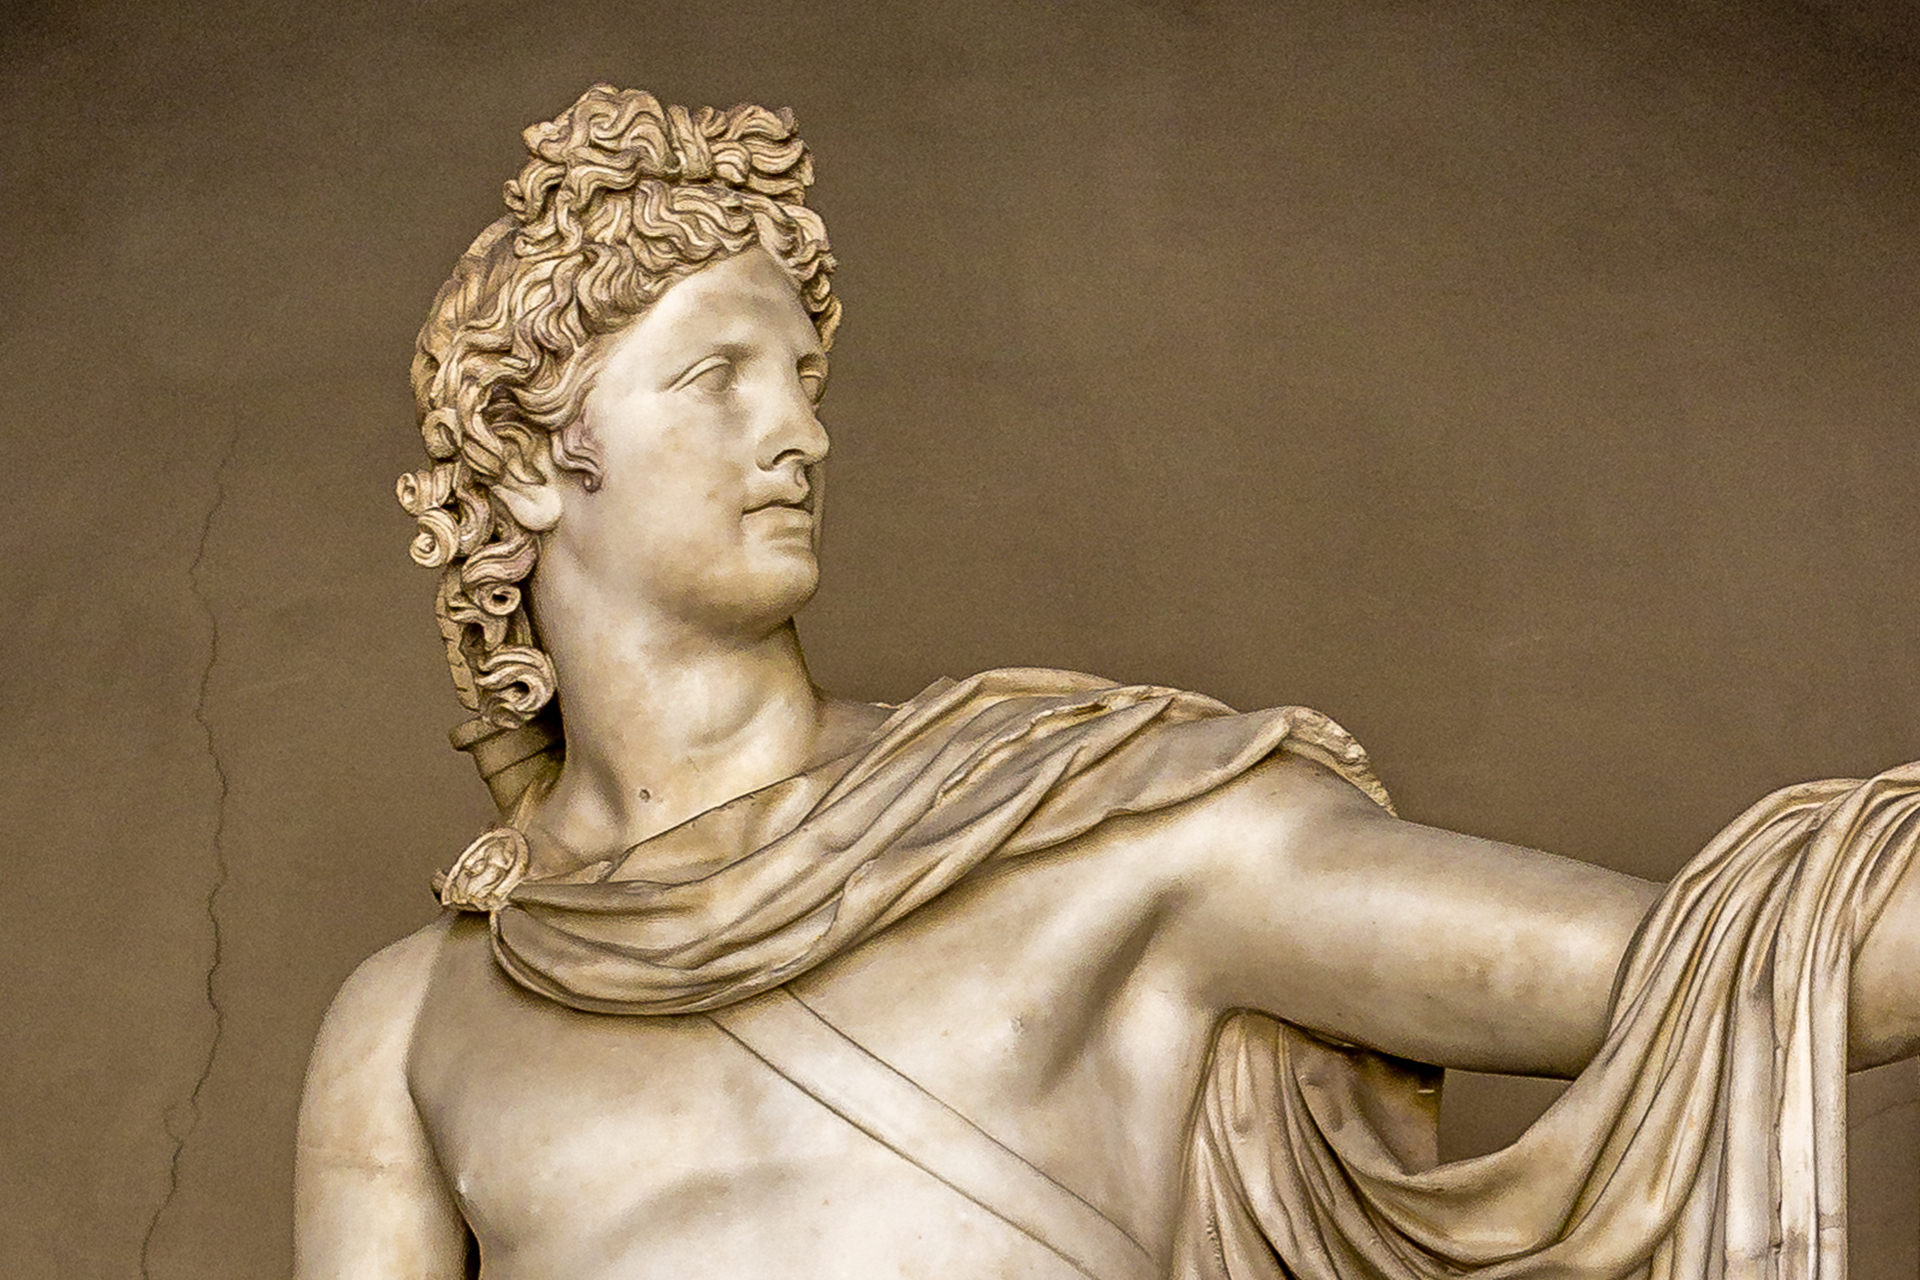 Hermes, Characteristics, Family, & Myth